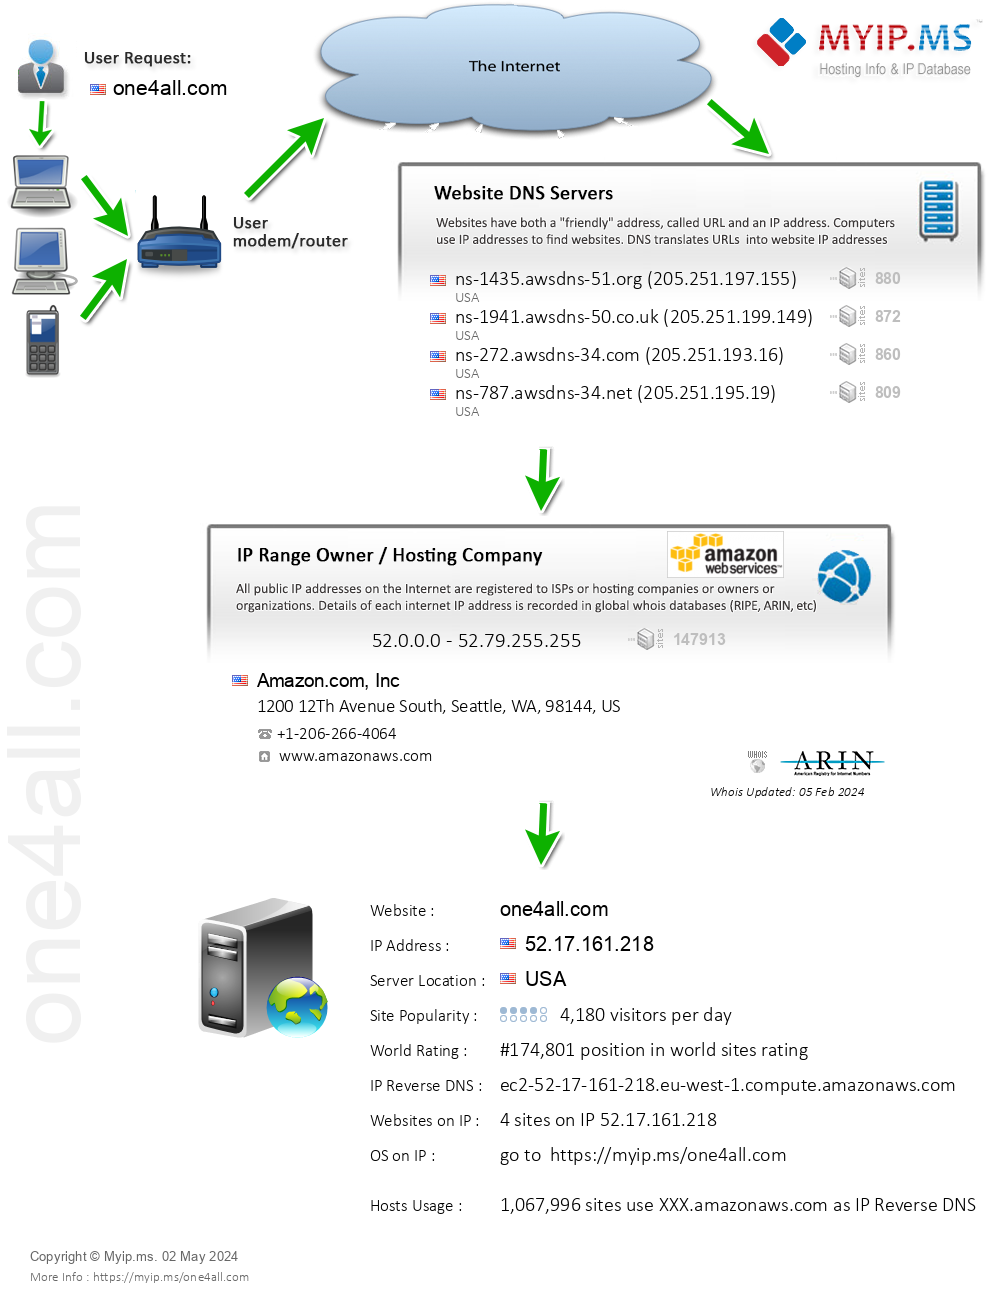 One4all.com - Website Hosting Visual IP Diagram